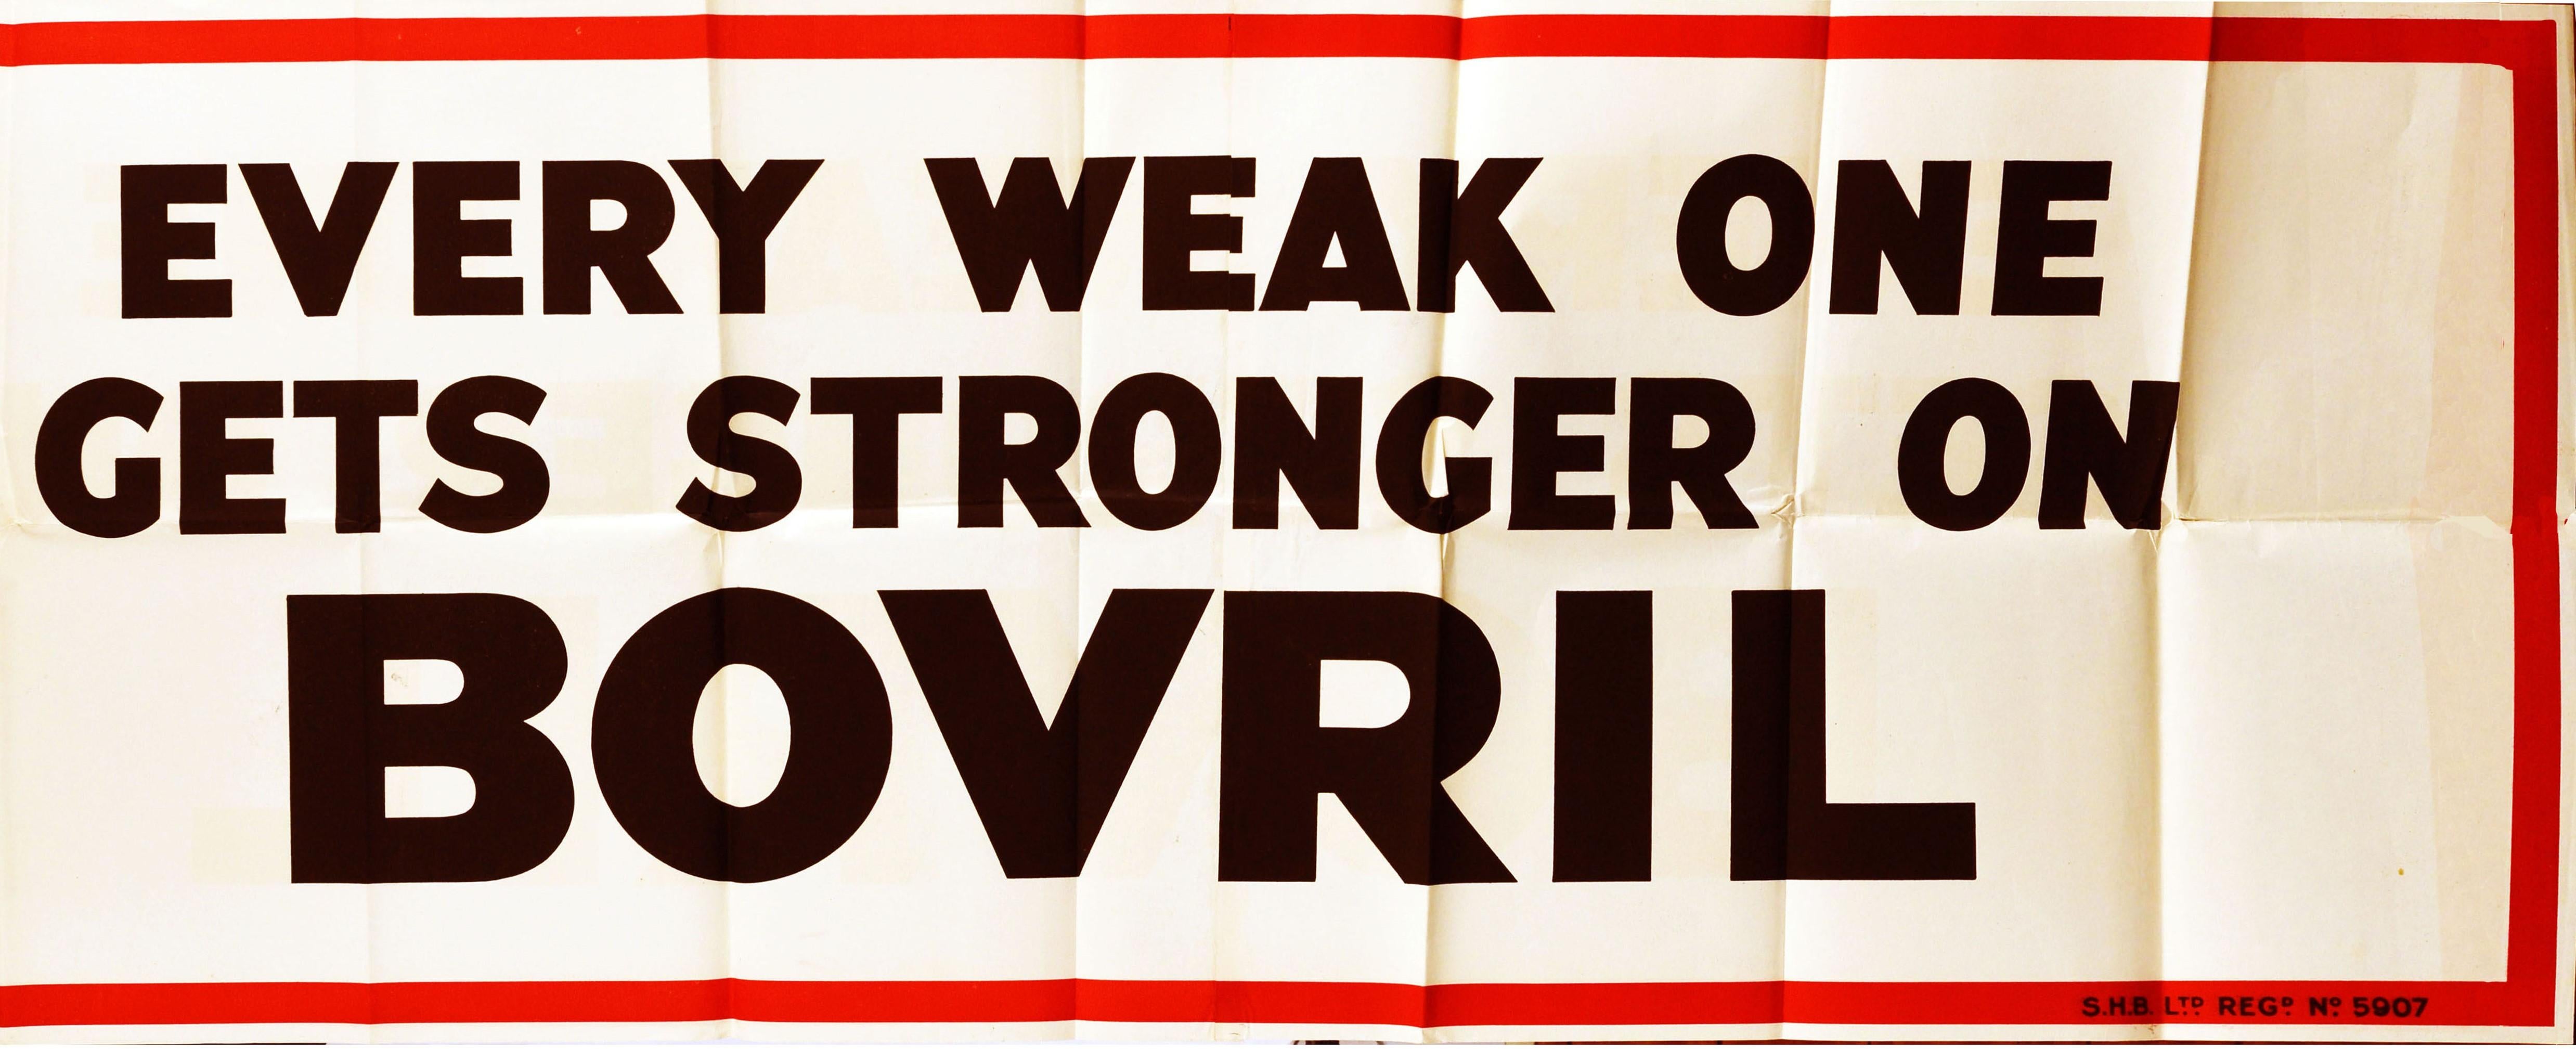 Originales Werbeplakat für Bovril - Every weak one gets stronger on Bovril - mit fetten schwarzen Buchstaben auf weißem Hintergrund in einem roten Rahmen. Diese Kampagne wurde in den 1930er Jahren in Großbritannien gedruckt und ähnelt mit